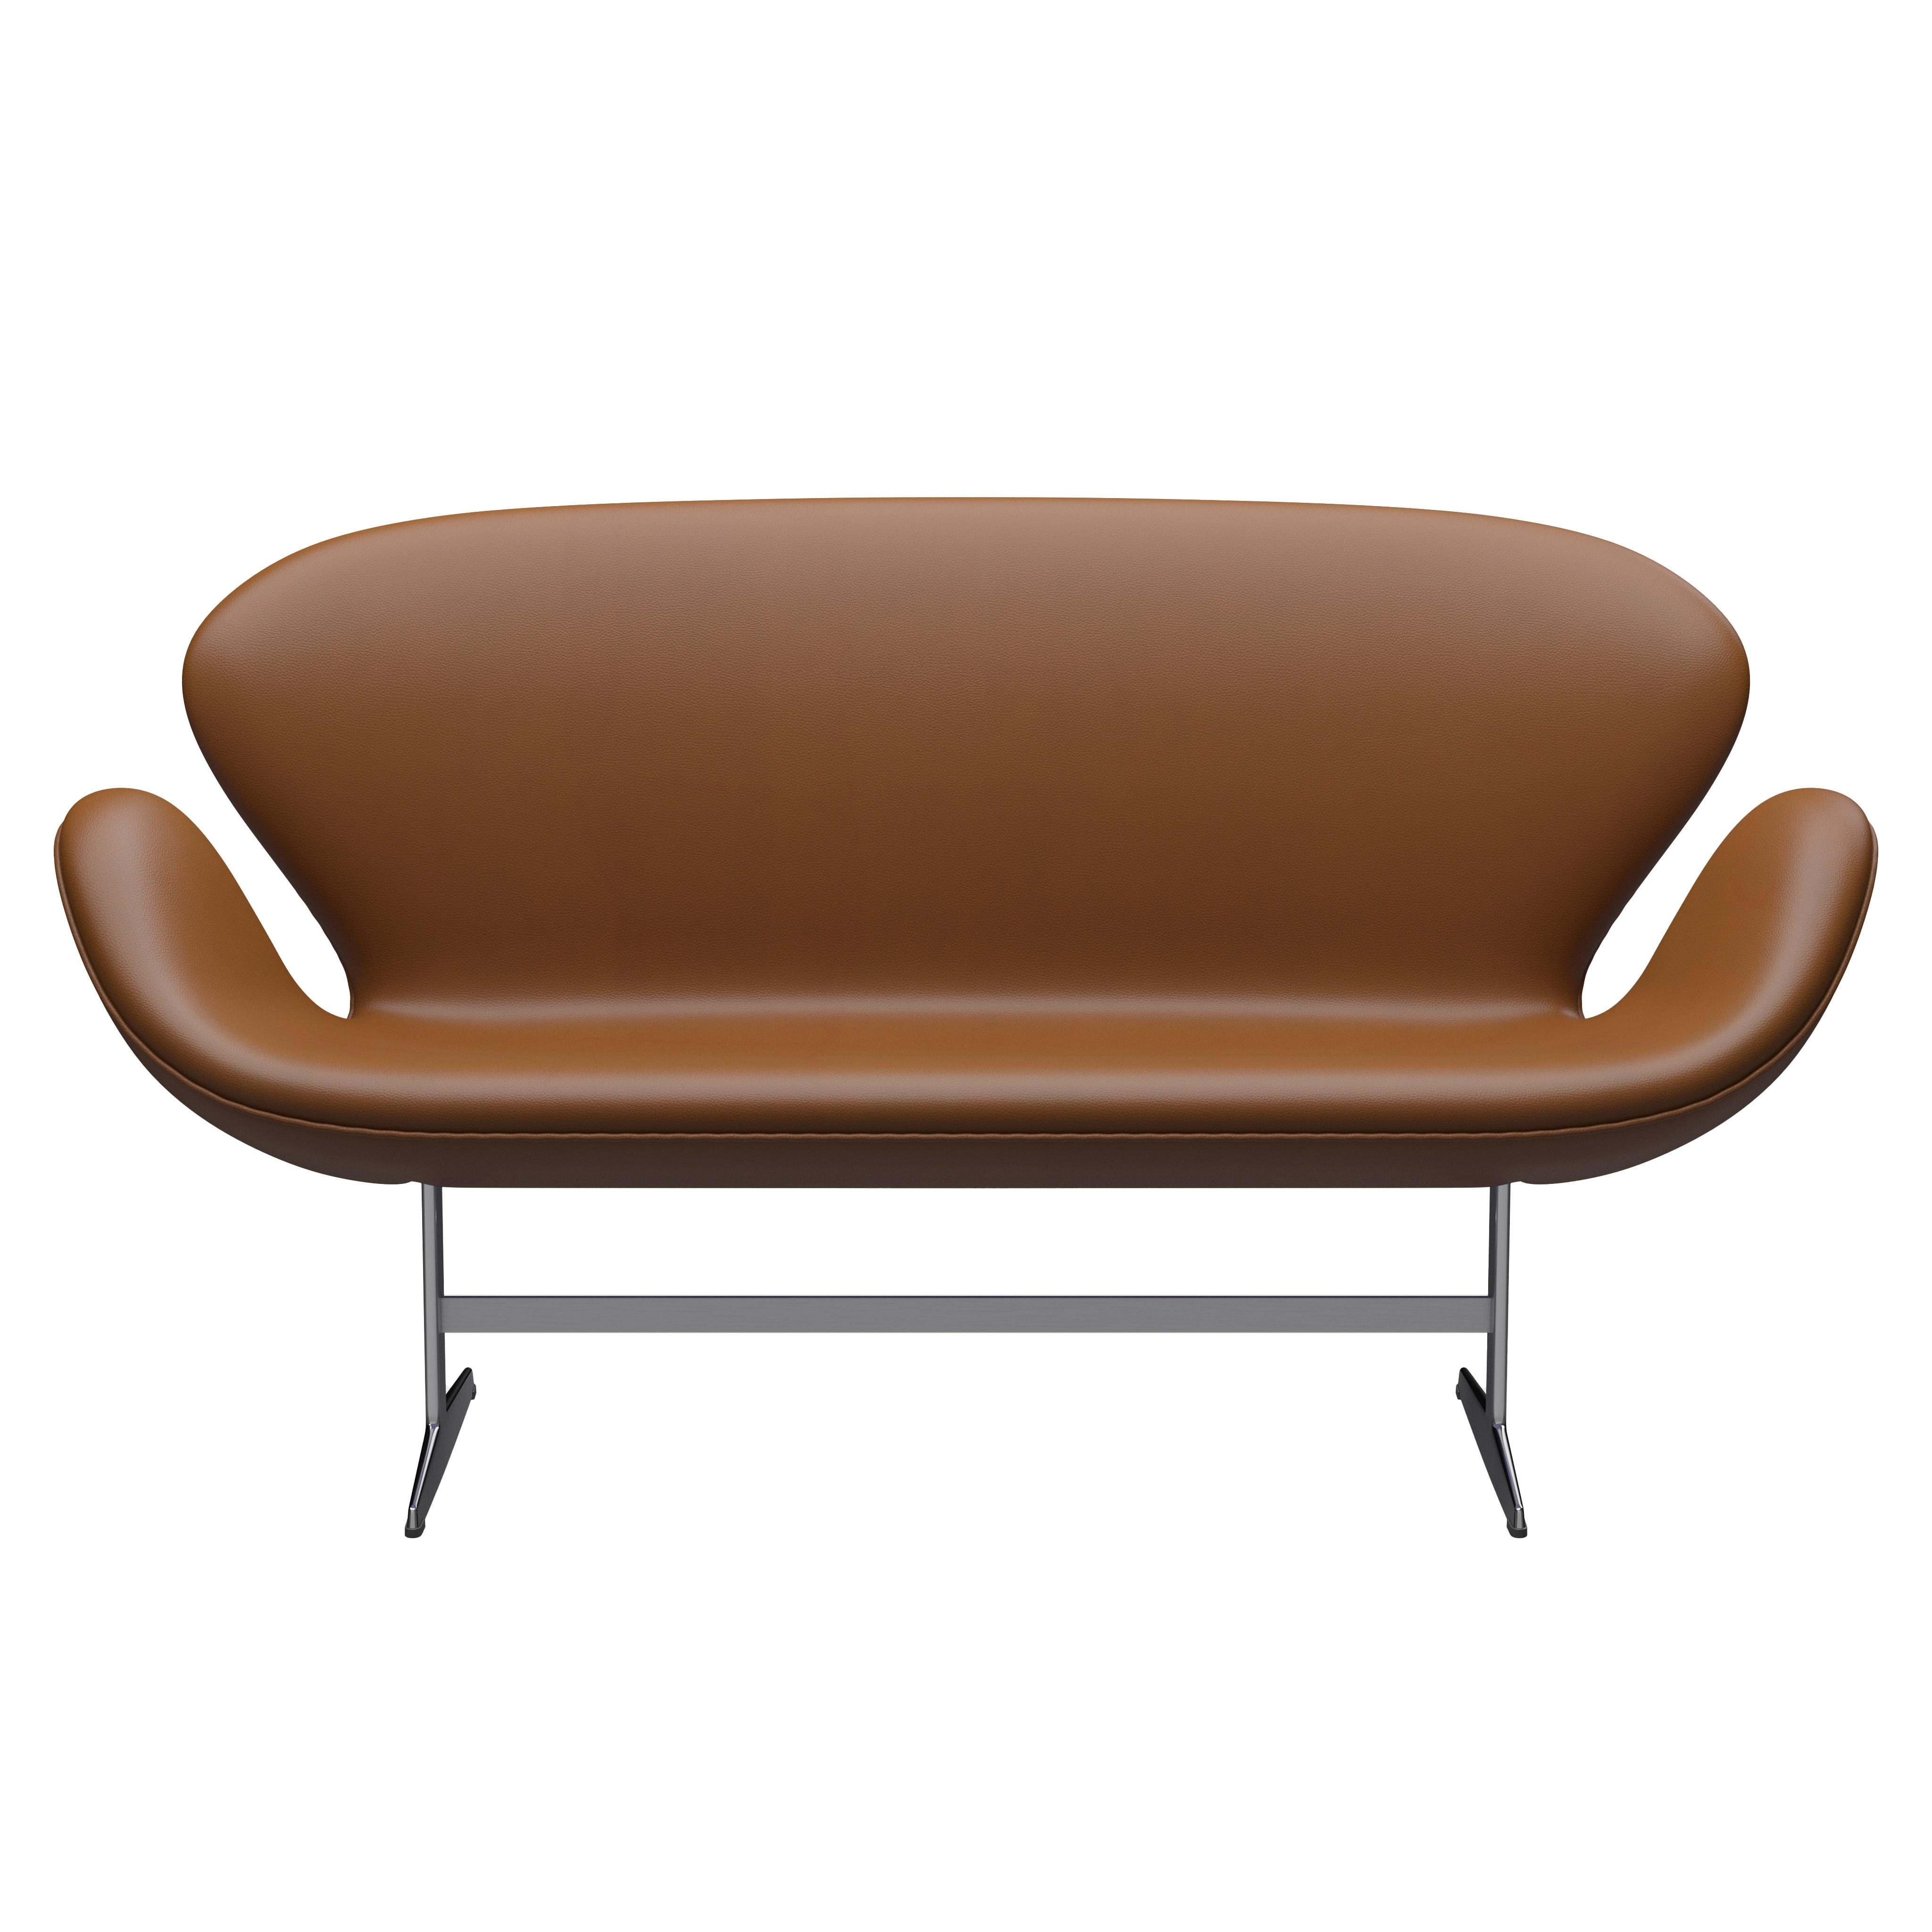 Arne Jacobsen 'Swan' Sofa for Fritz Hansen in Leather Upholstery (Cat. 4) For Sale 6